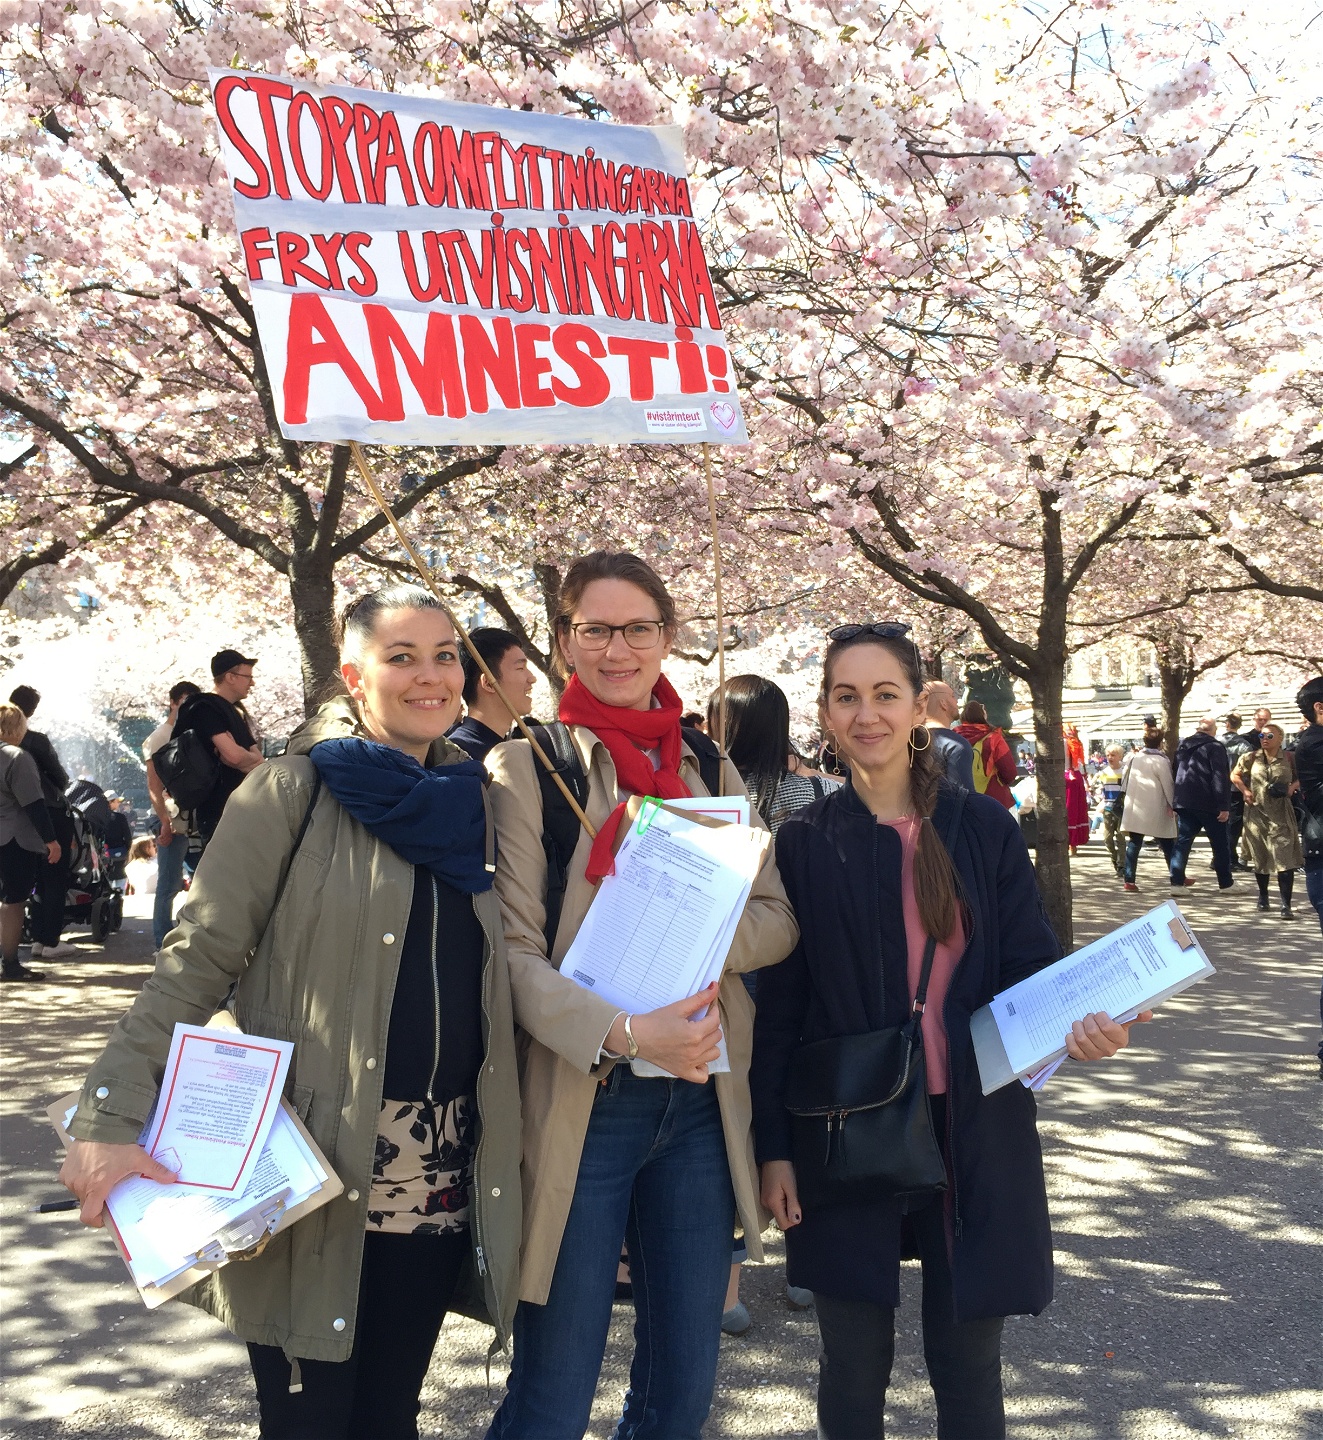 Alla första maj-paroller i solidaritetens tecken hade inte fokus på lönearbetsförhållanden. I Stockholm samlades nätverket #vistårinteut och mobiliserade för flyktingamnesti.